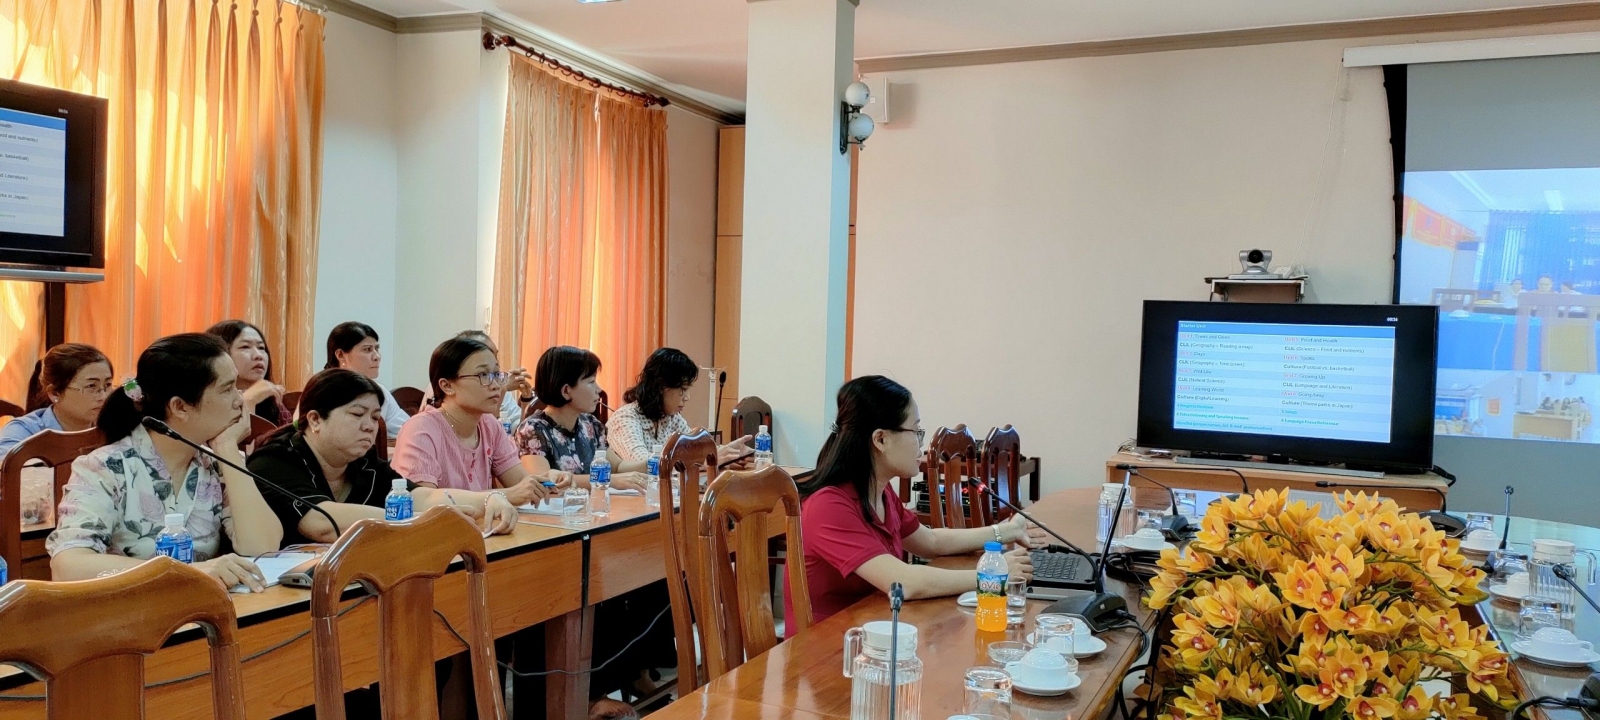 Tây Ninh: 100% giáo viên, cán bộ quản lý được tập huấn và bồi dưỡng về SGK mới